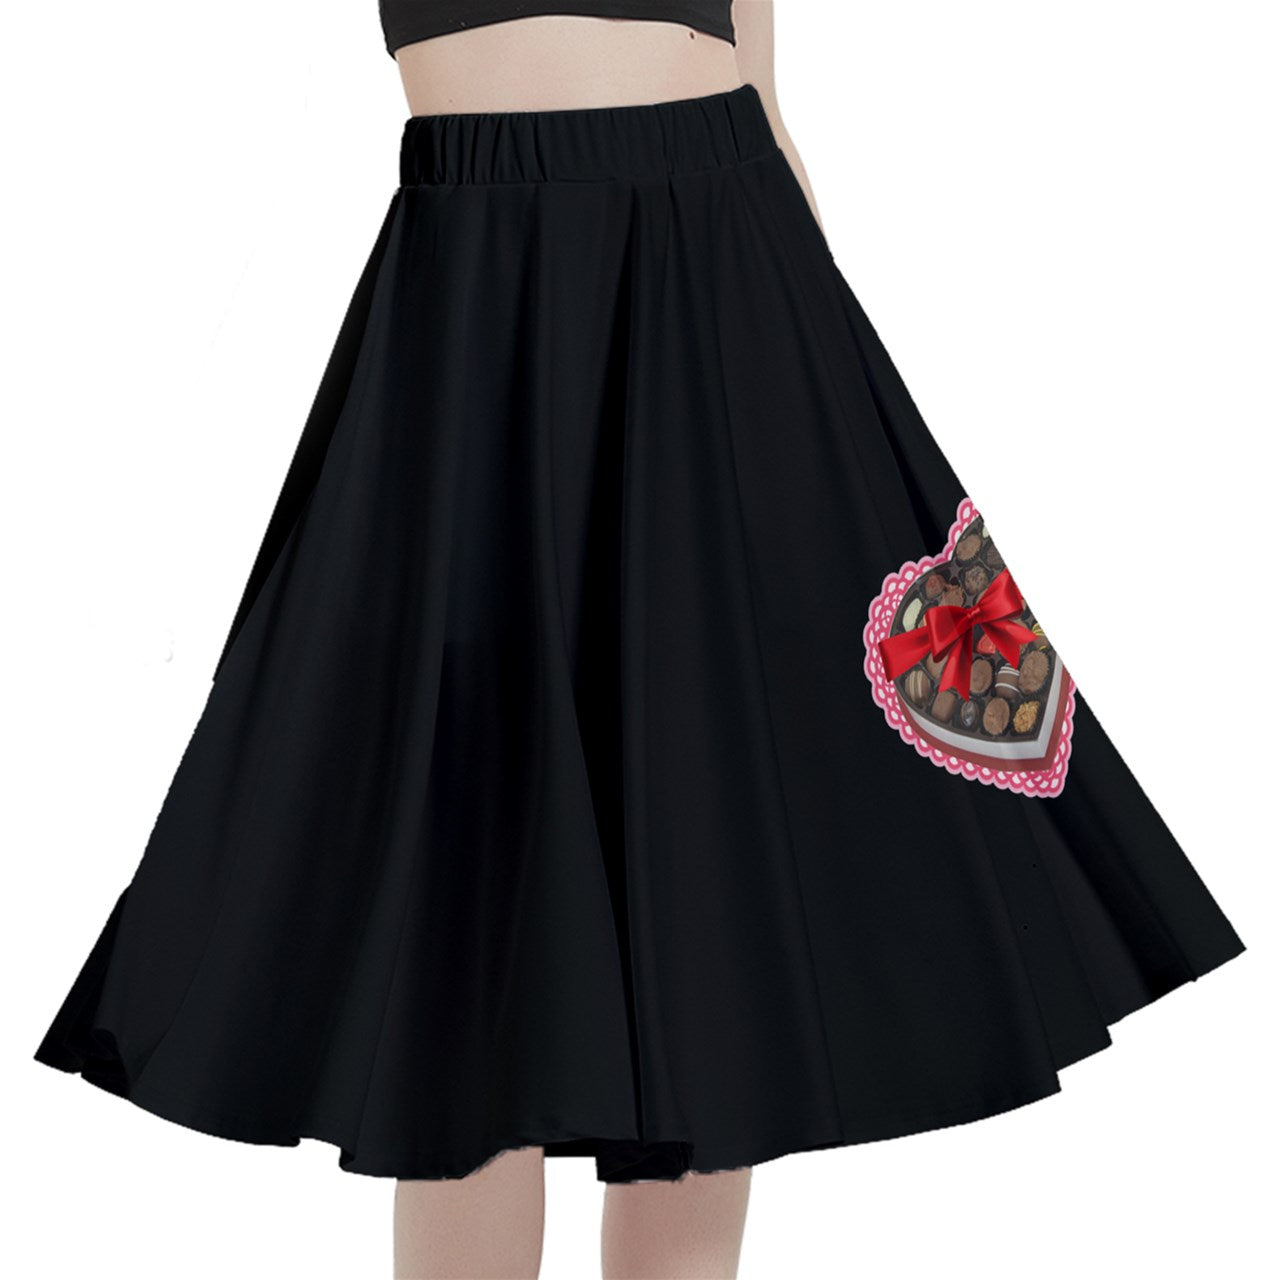 Heart Shaped Box Midi Skirt With Pocket